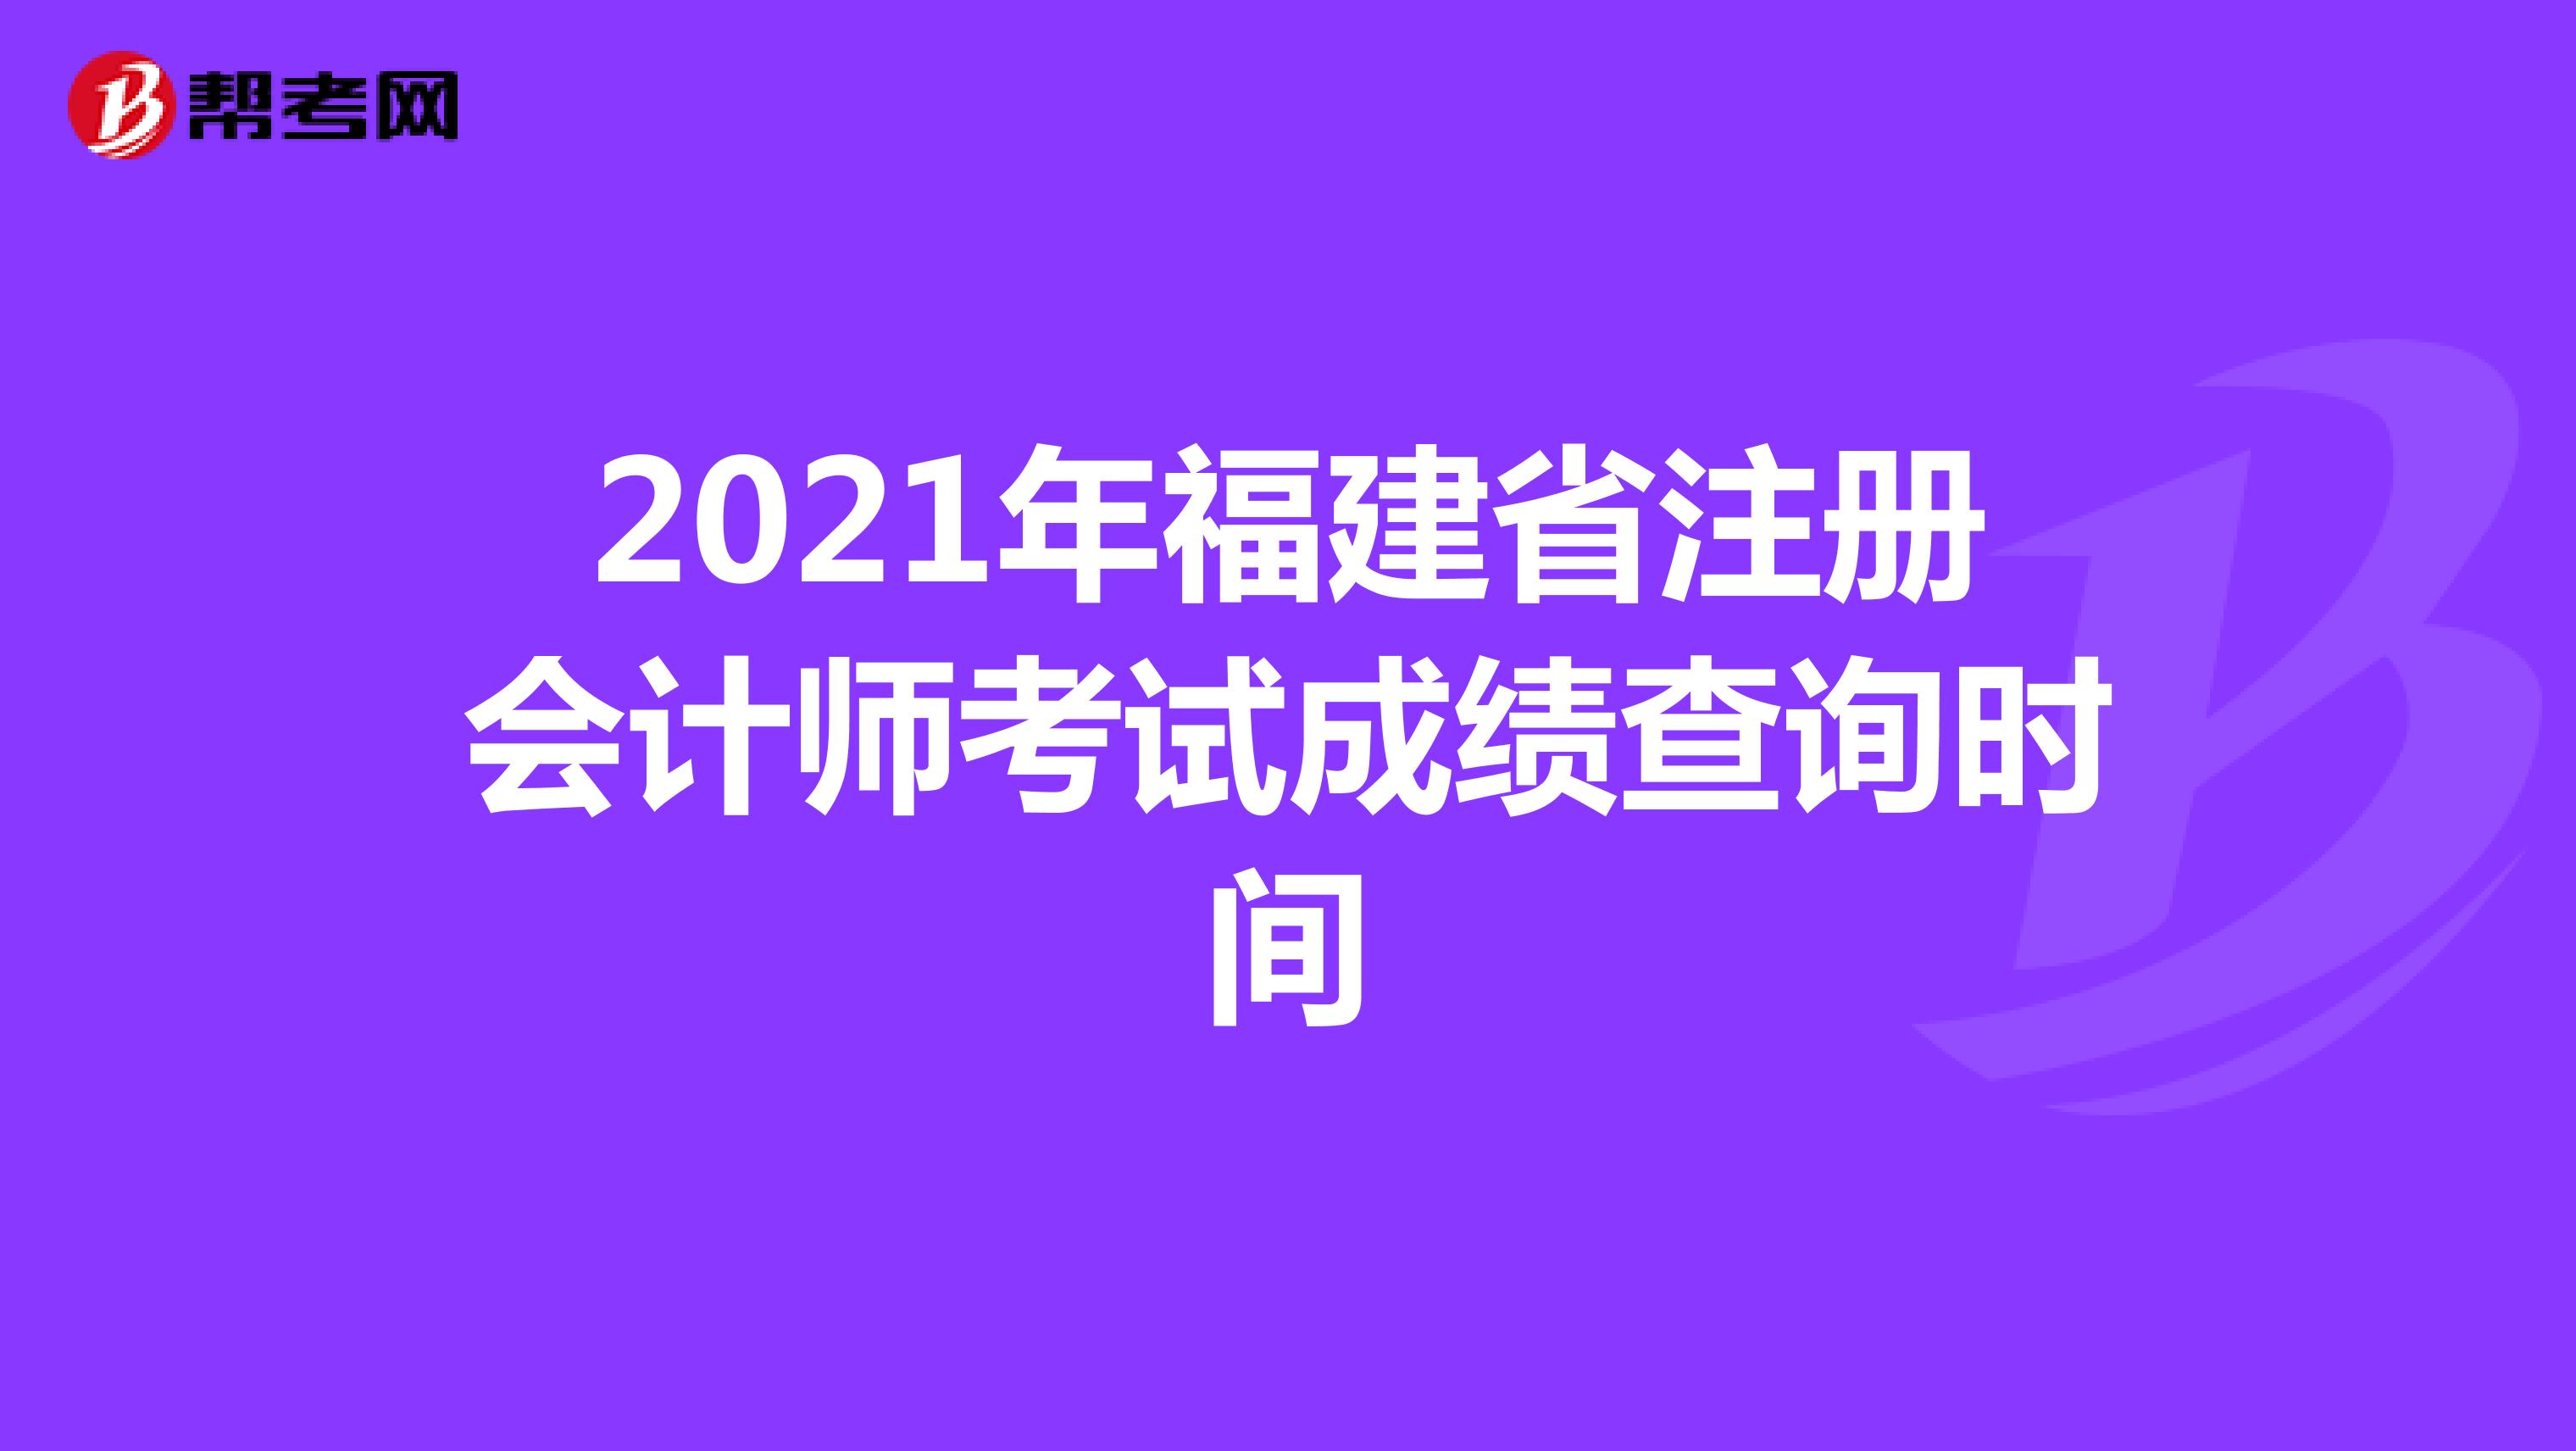 2021年福建省注册会计师考试成绩查询时间